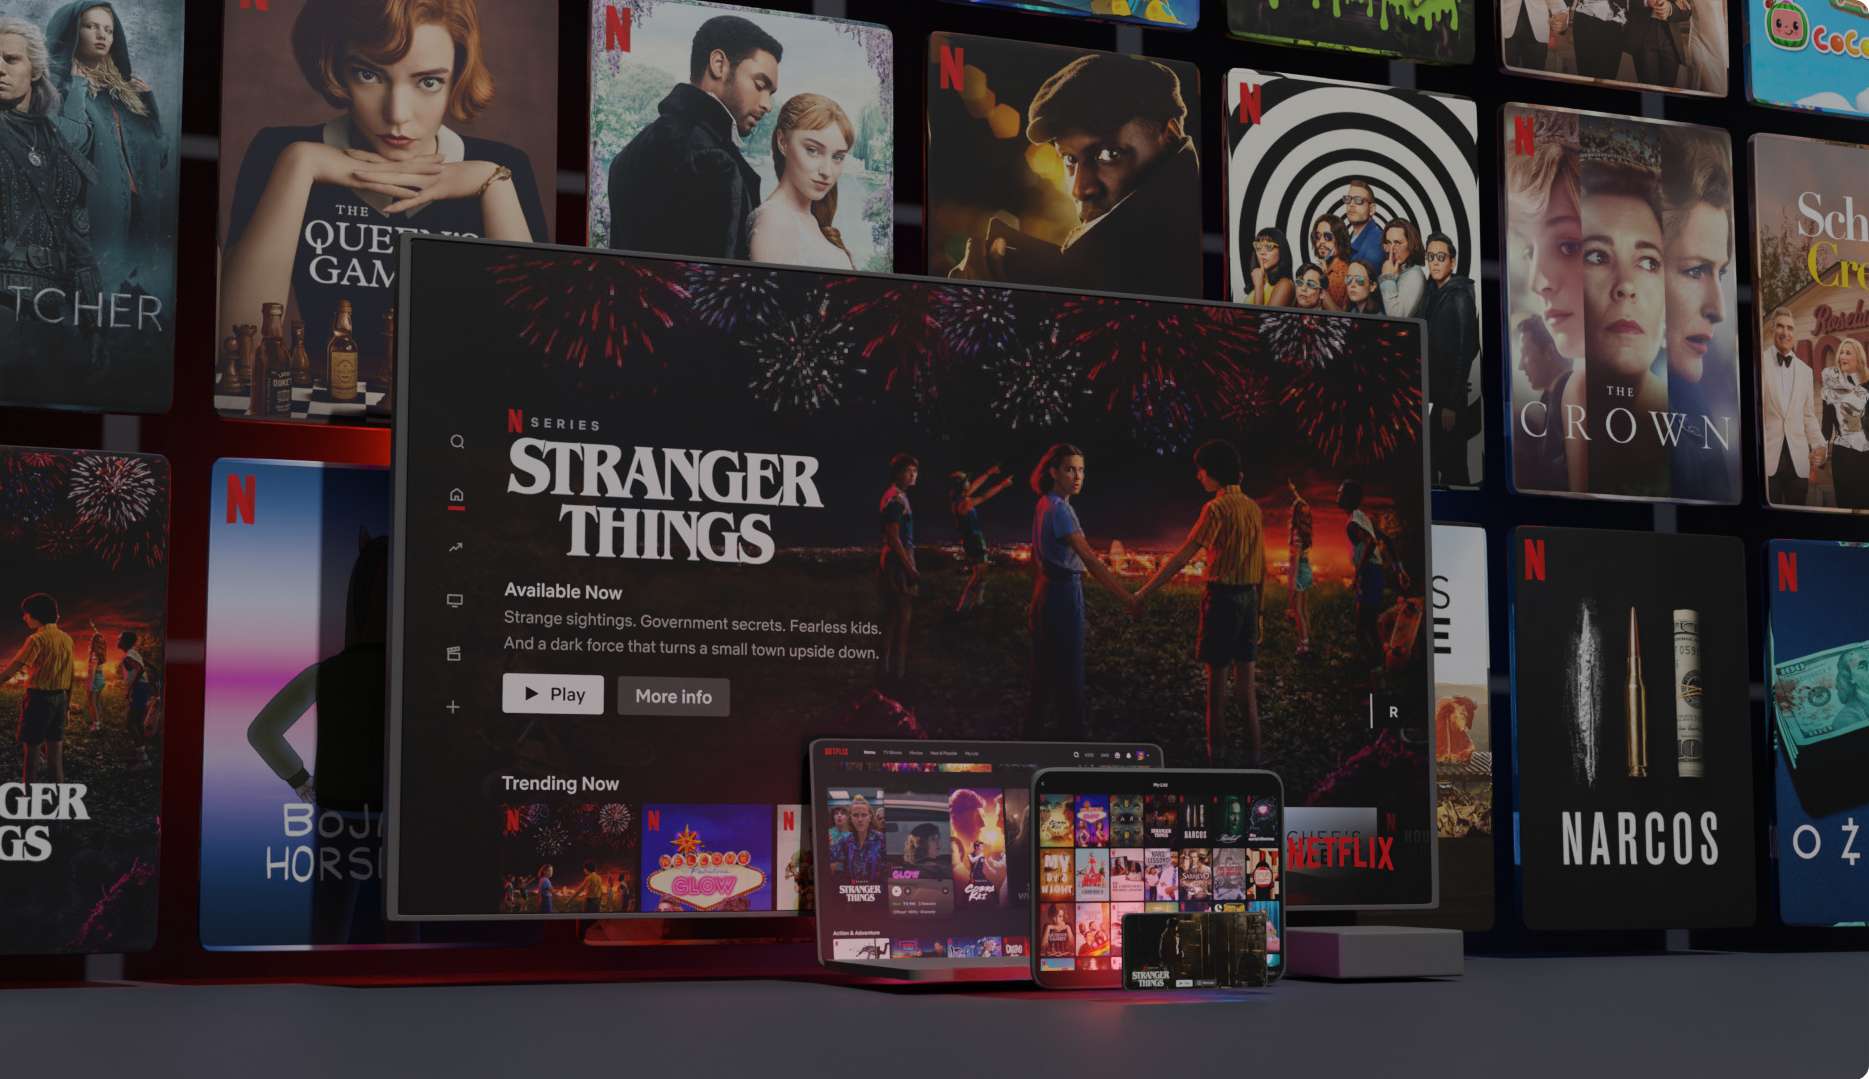 Netflix lança novo plano gratuito, mas apenas num país - 4gnews